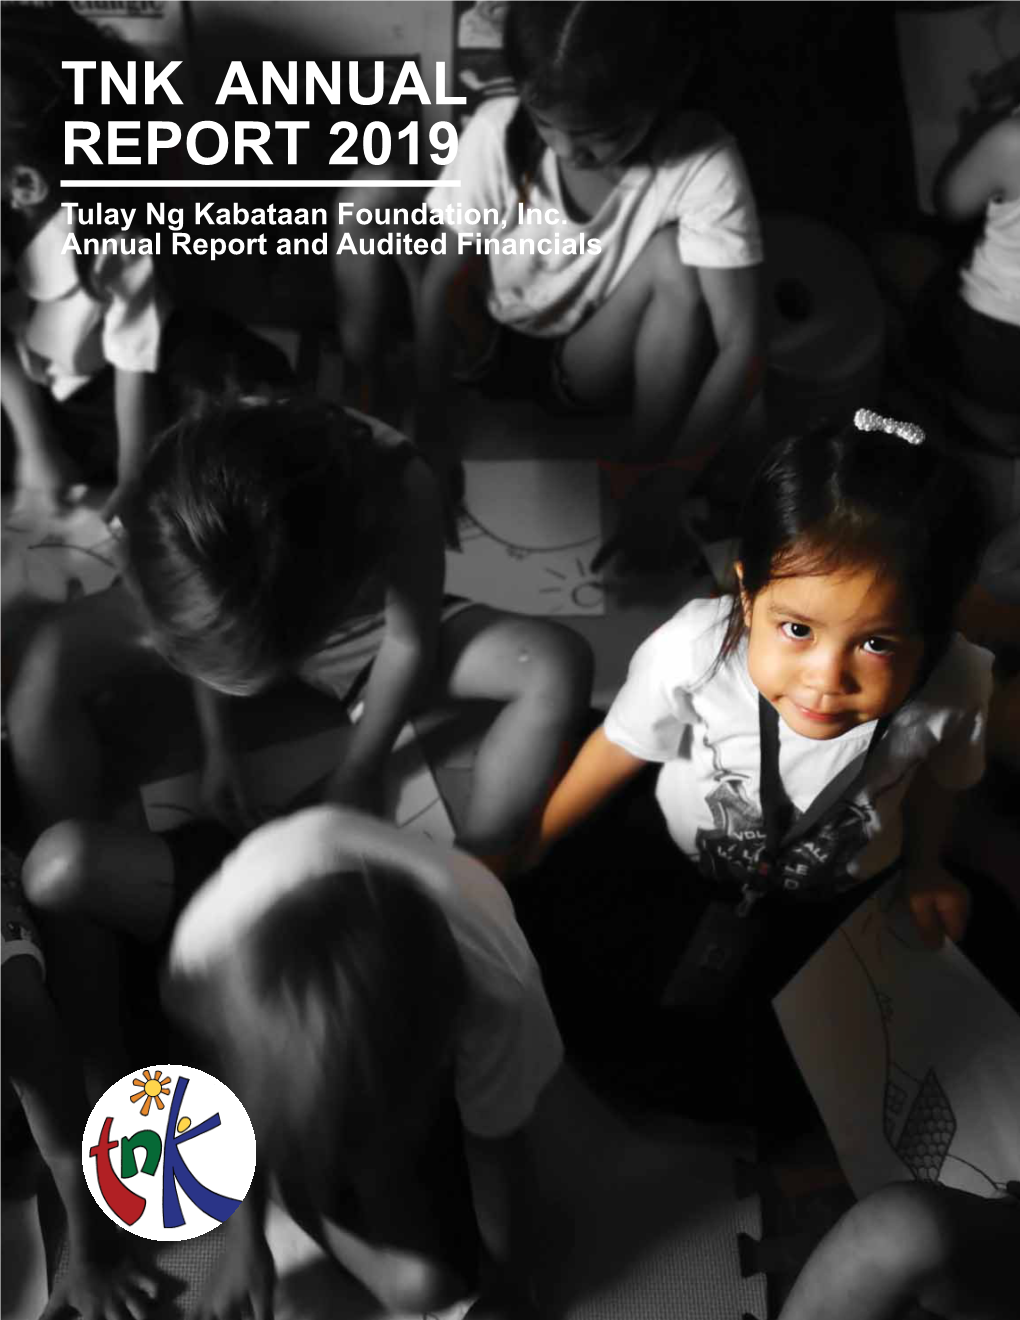 TNK ANNUAL REPORT 2019 Tulay Ng Kabataan Foundation, Inc